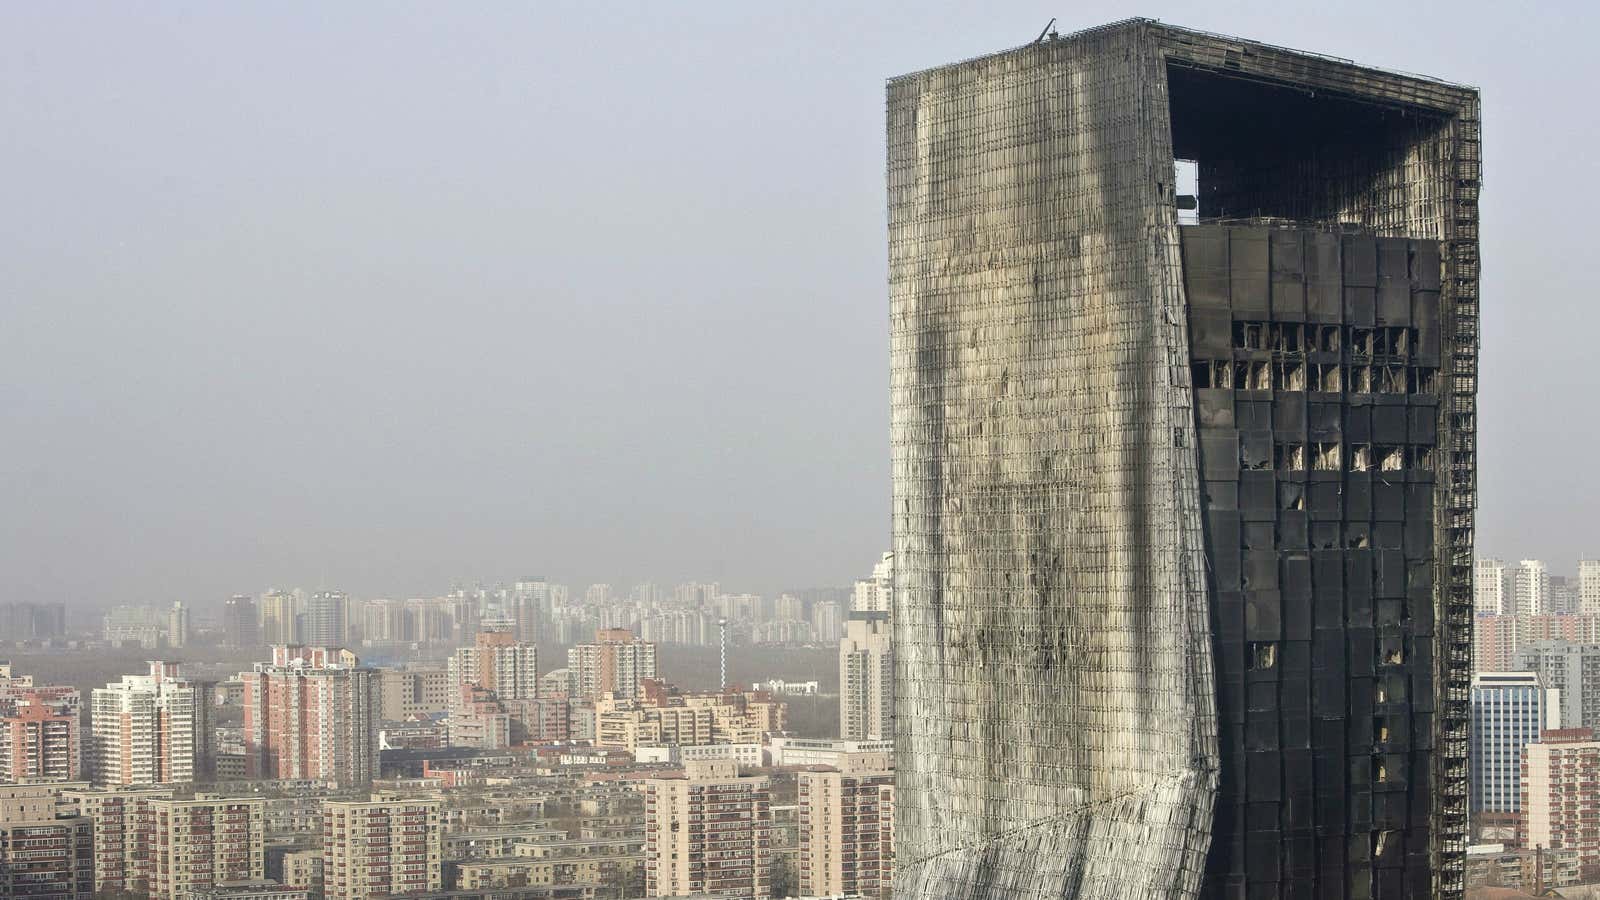 The Mandarin Oriental in Beijing after a fire in 2009